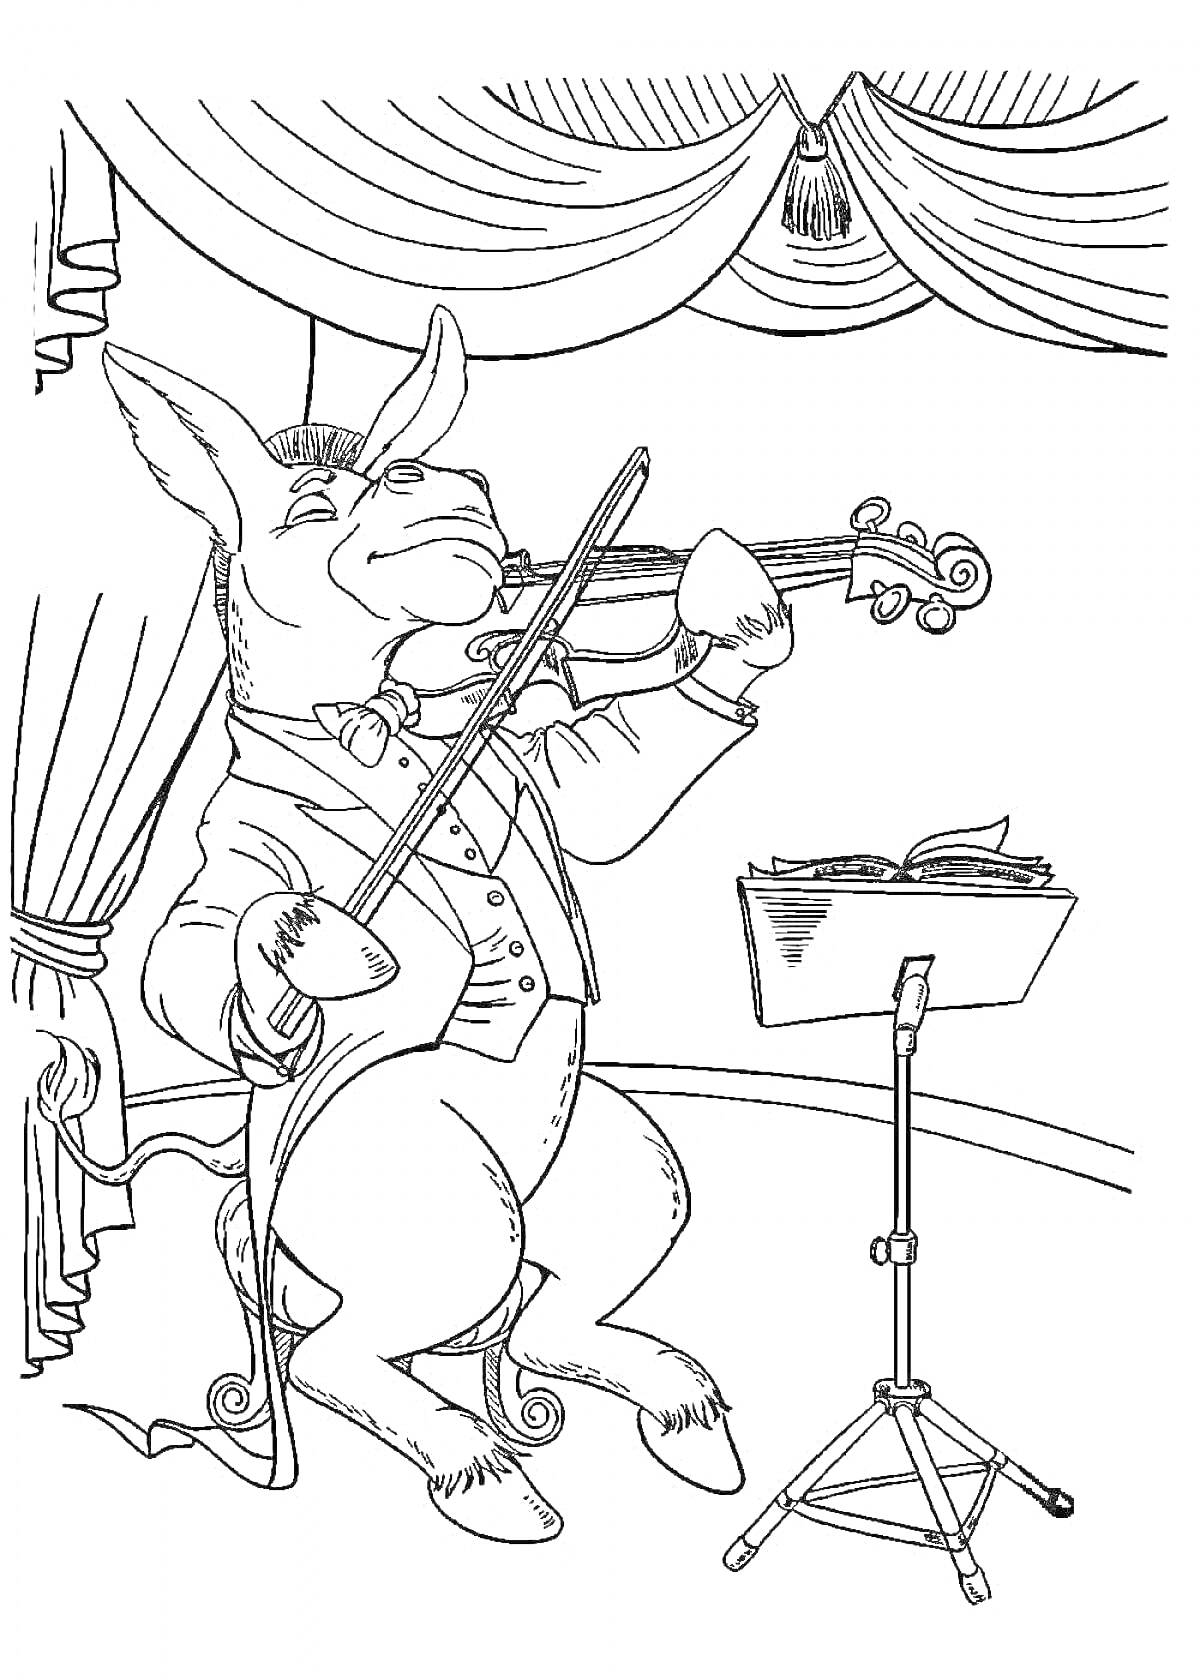 Раскраска Осел играет на скрипке под музыку с пюпитра на сцене с занавесом